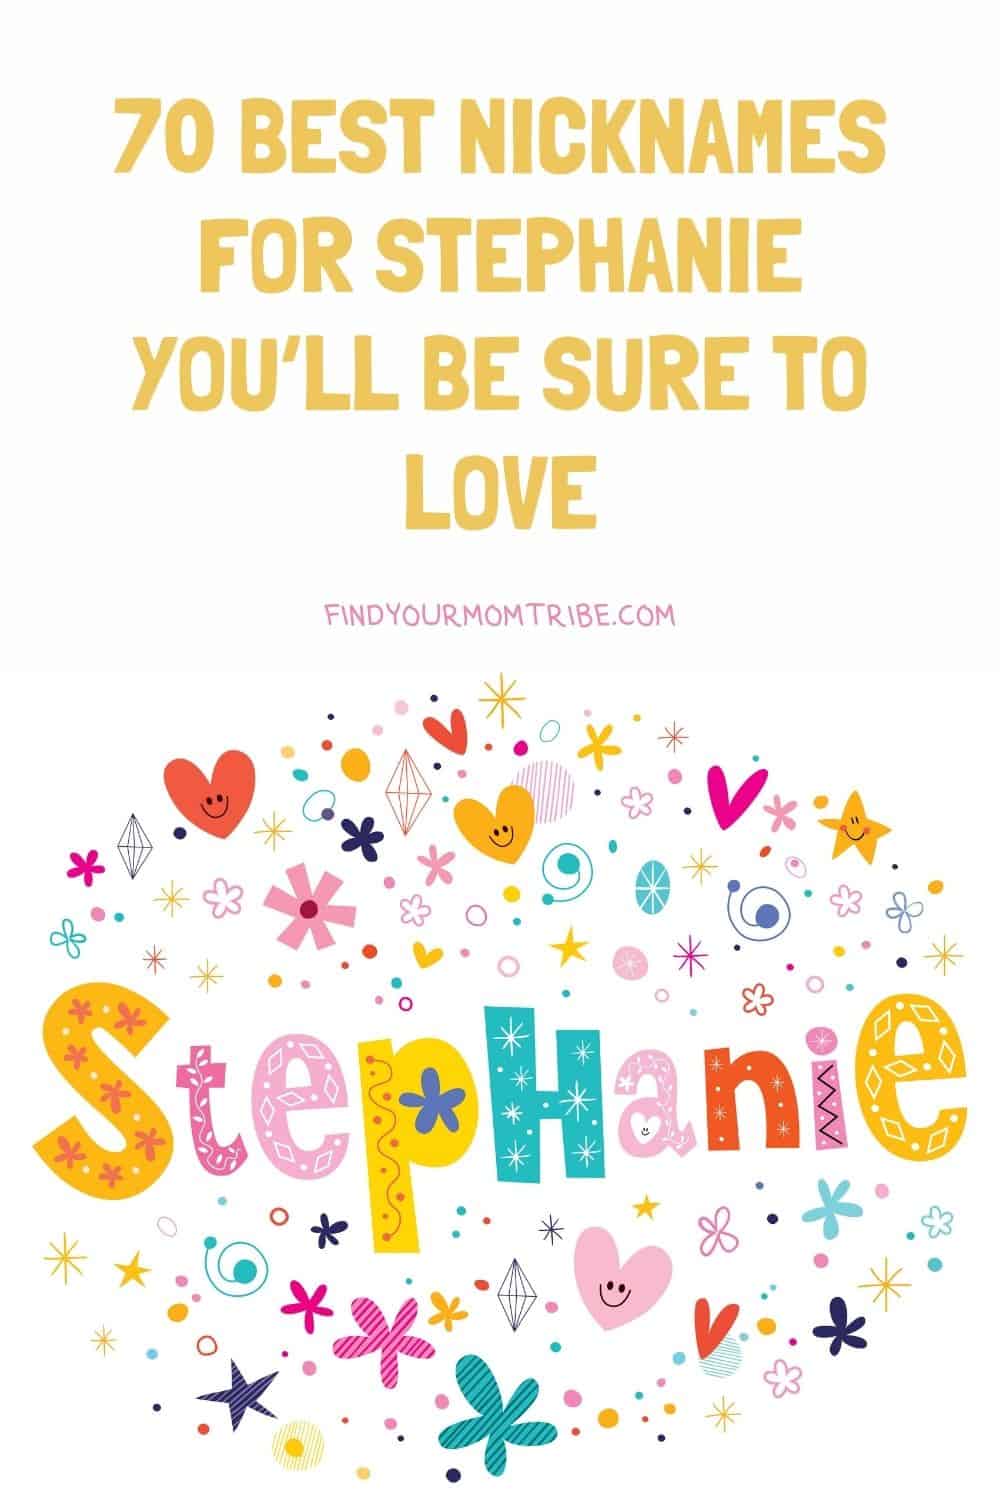 Pinterest nicknames for stephanie 